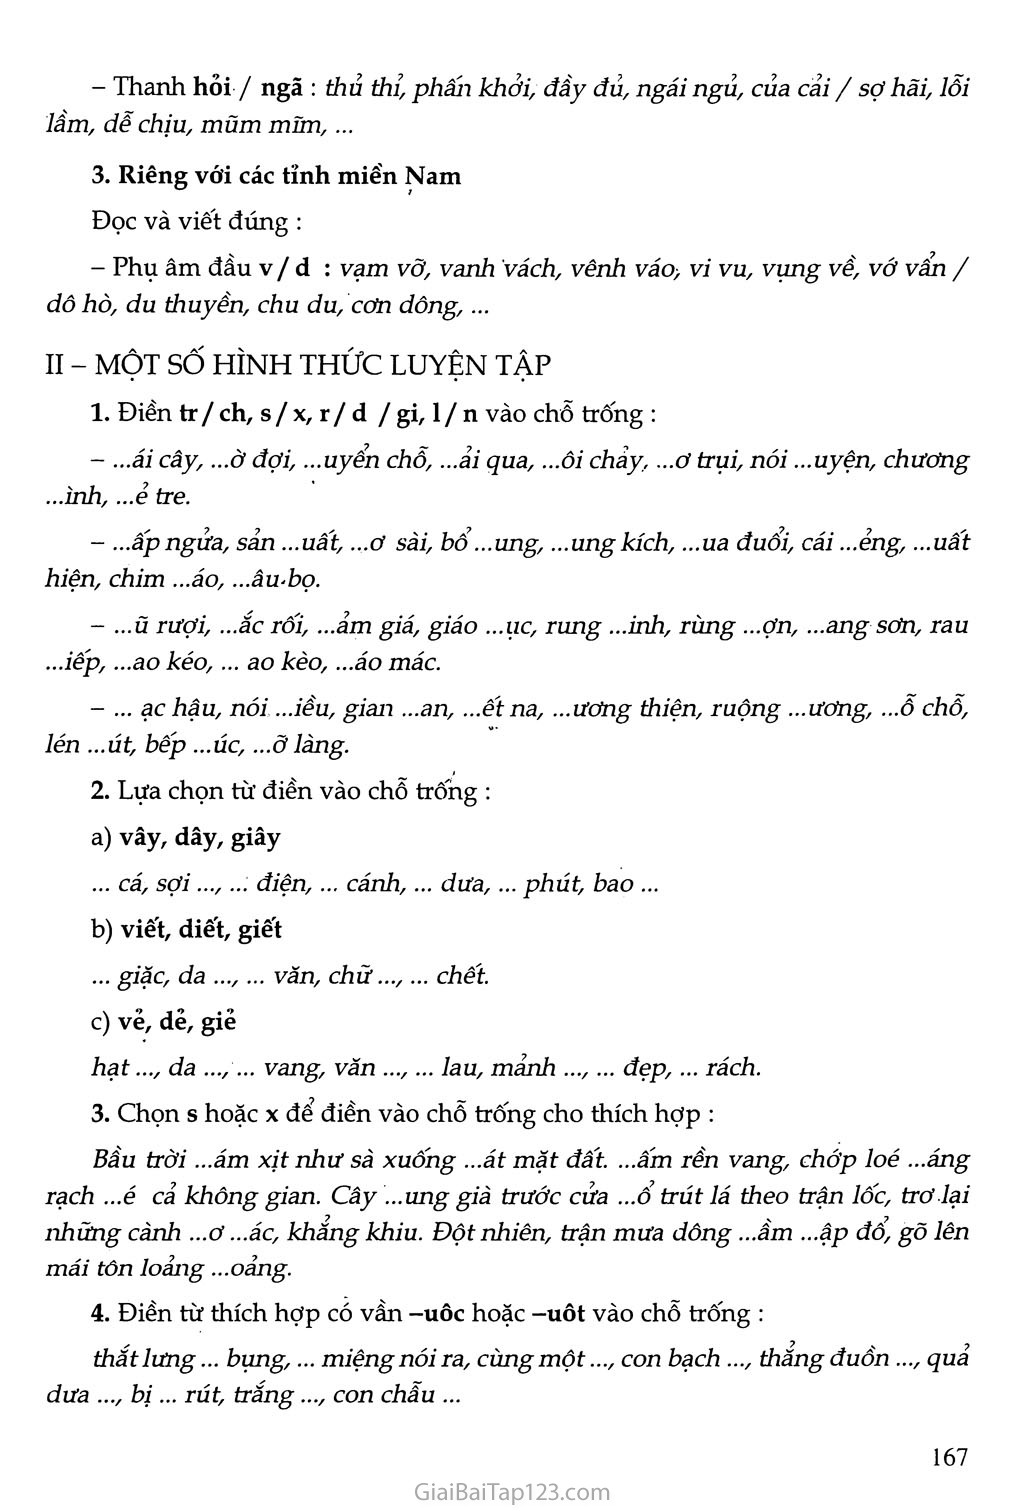 Chương trình địa phương (phần Tiếng Việt): Rèn luyện chính tả trang 2